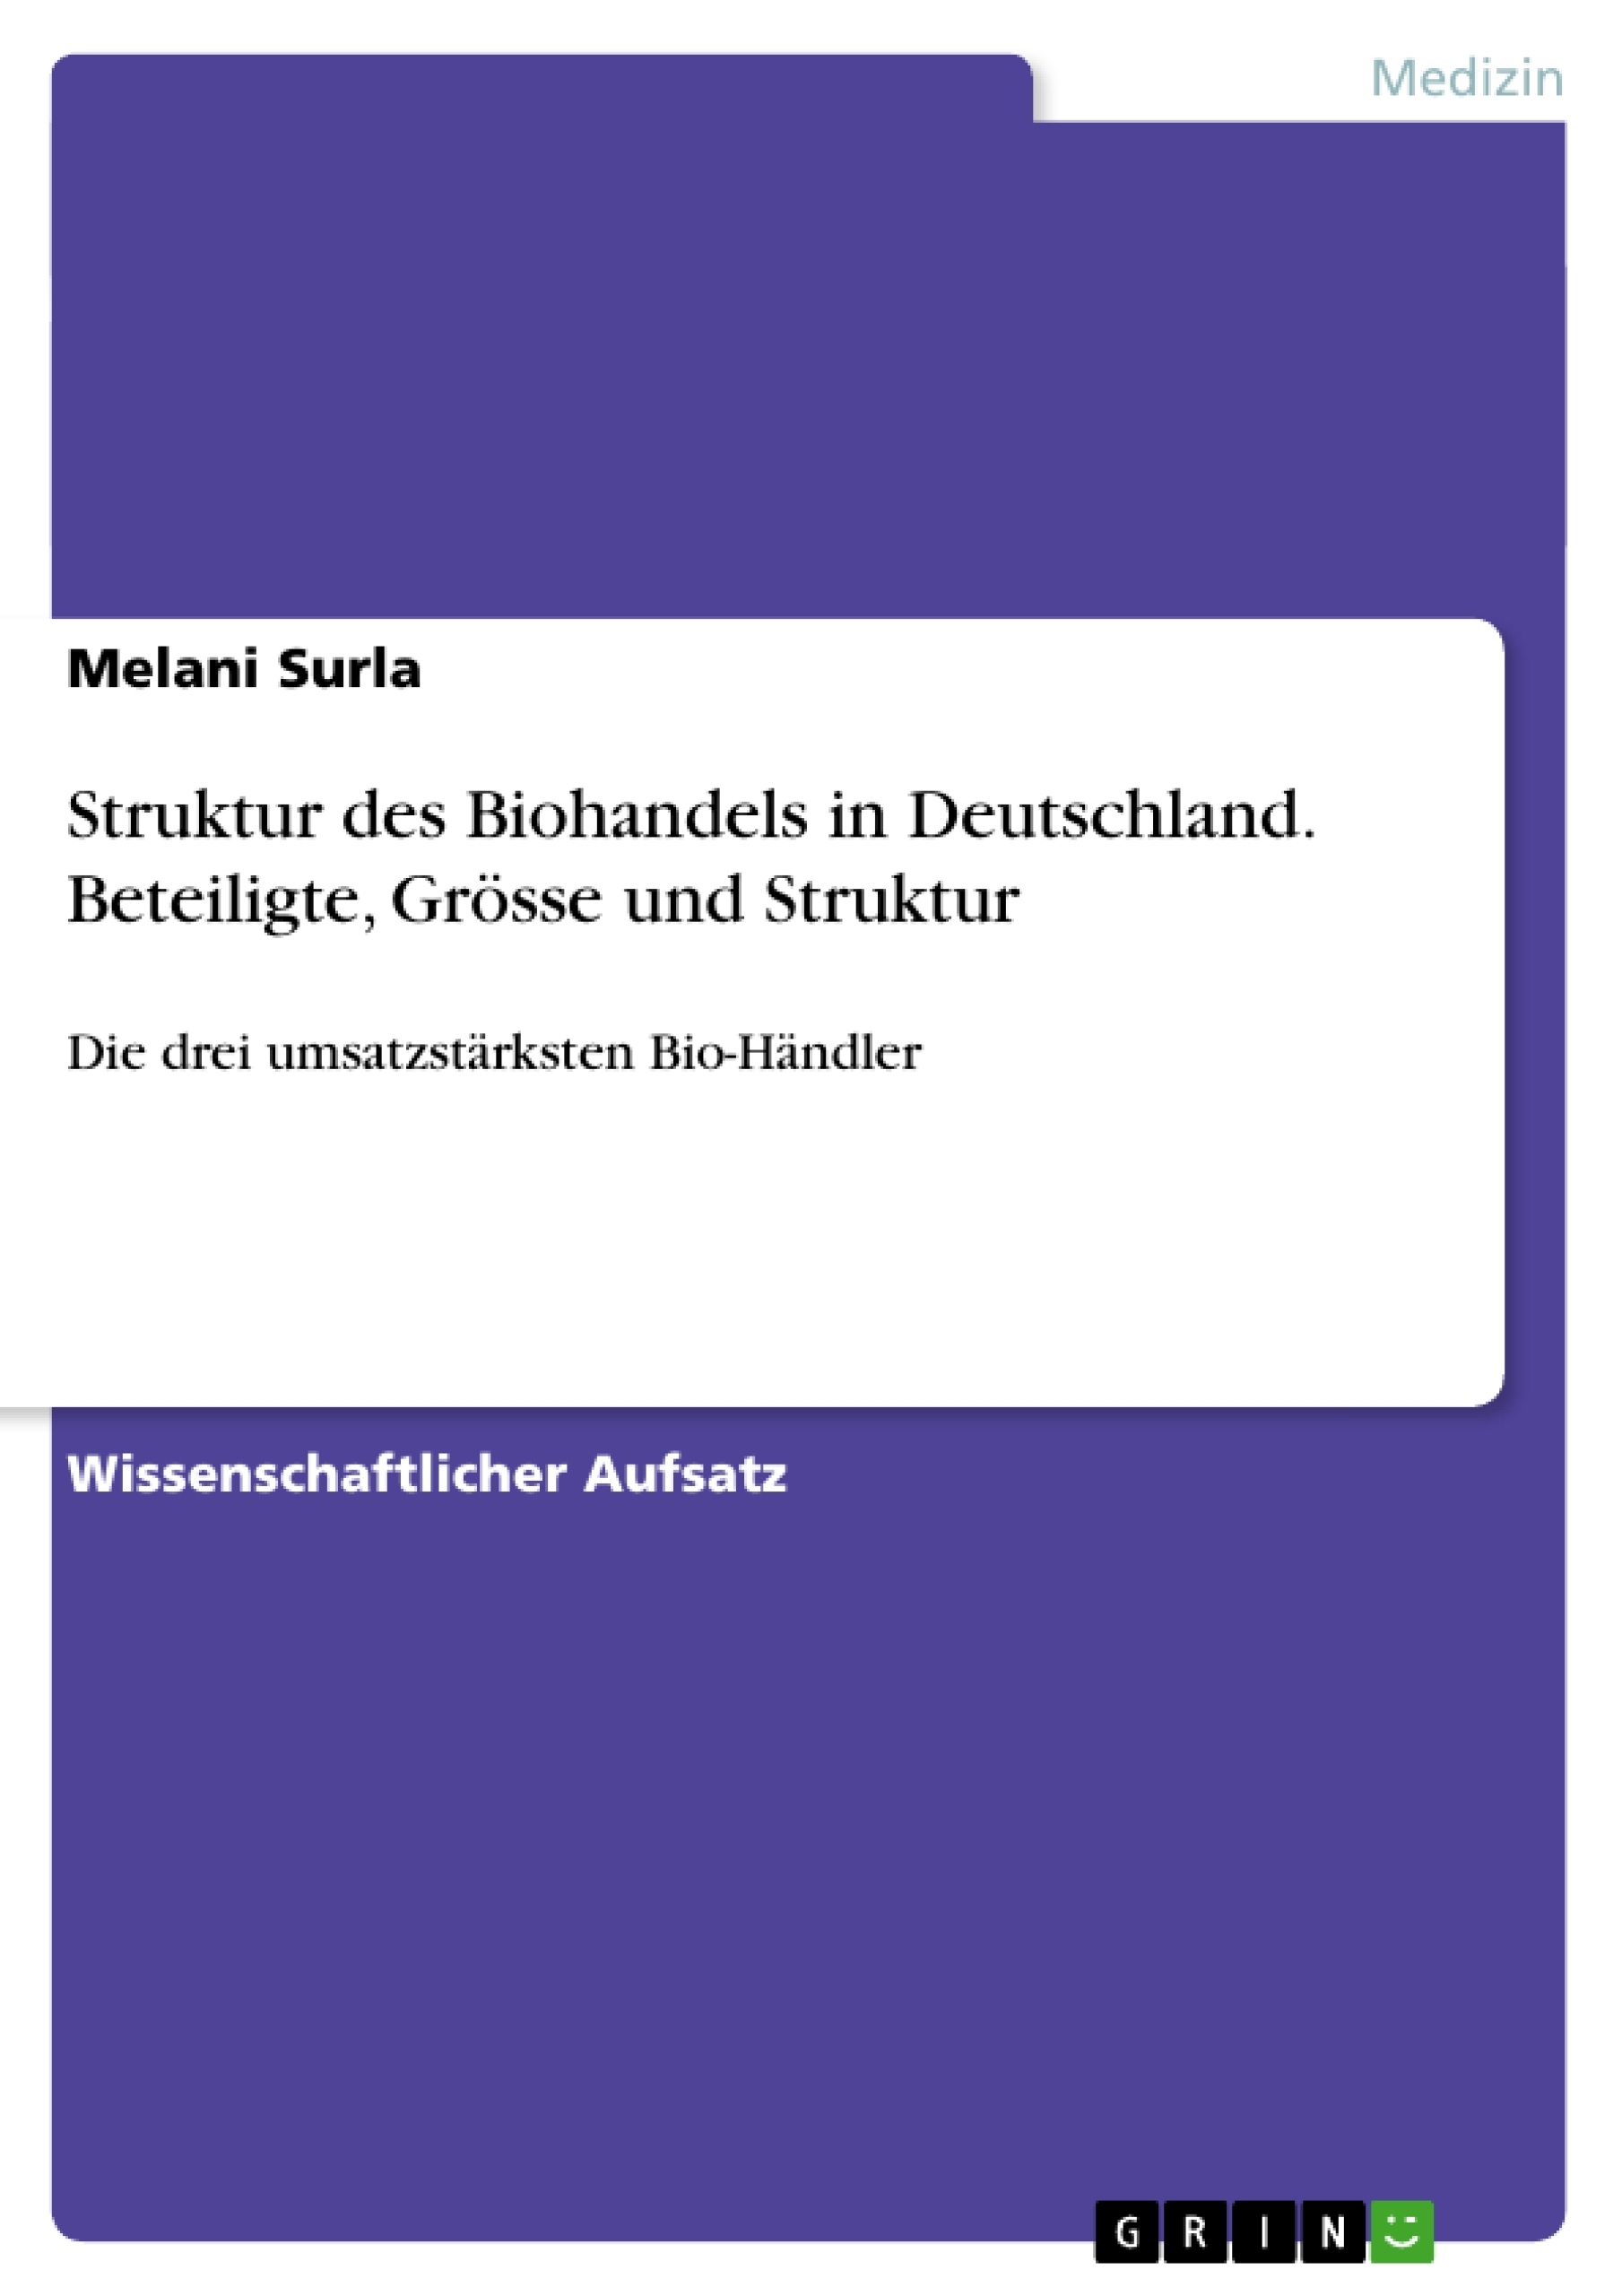 Titel: Struktur des Biohandels in Deutschland. Beteiligte, Grösse und Struktur